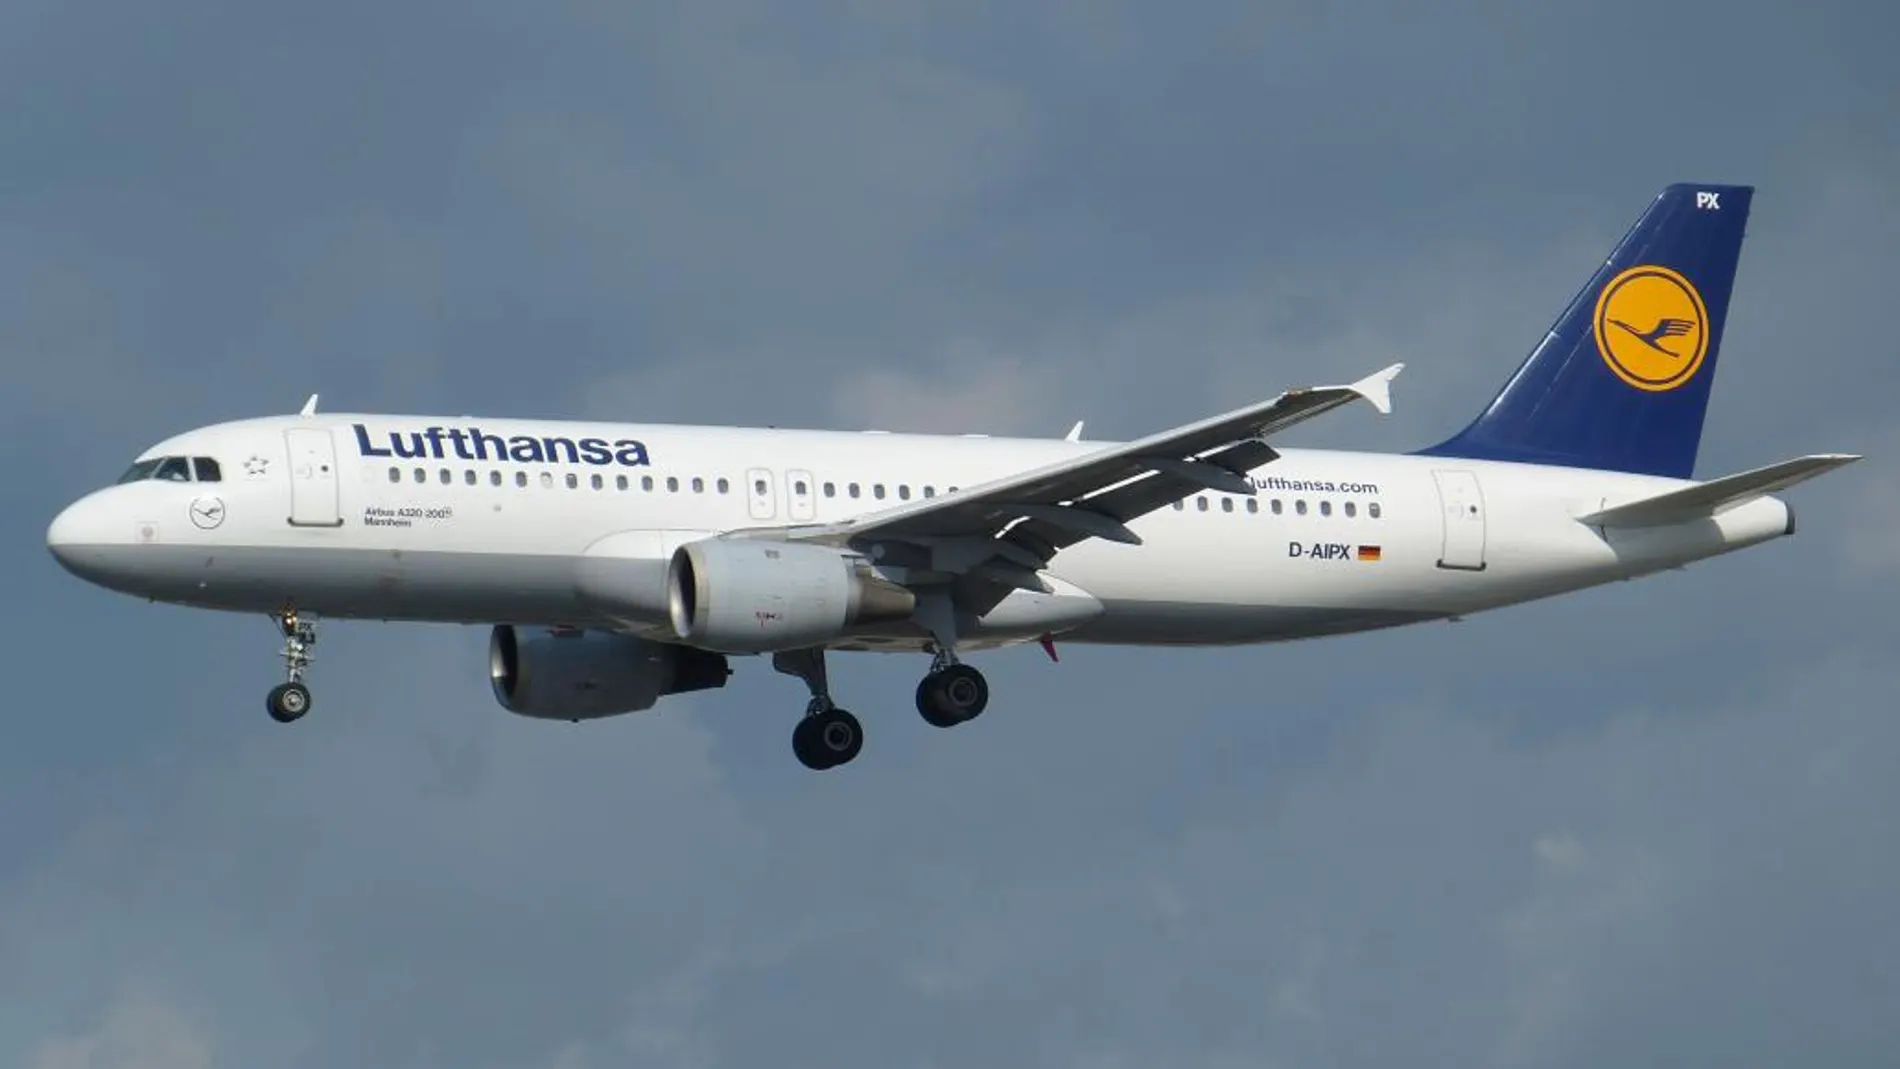 Lufthansa cobrará 16 euros a reservas hechas mediante terceros